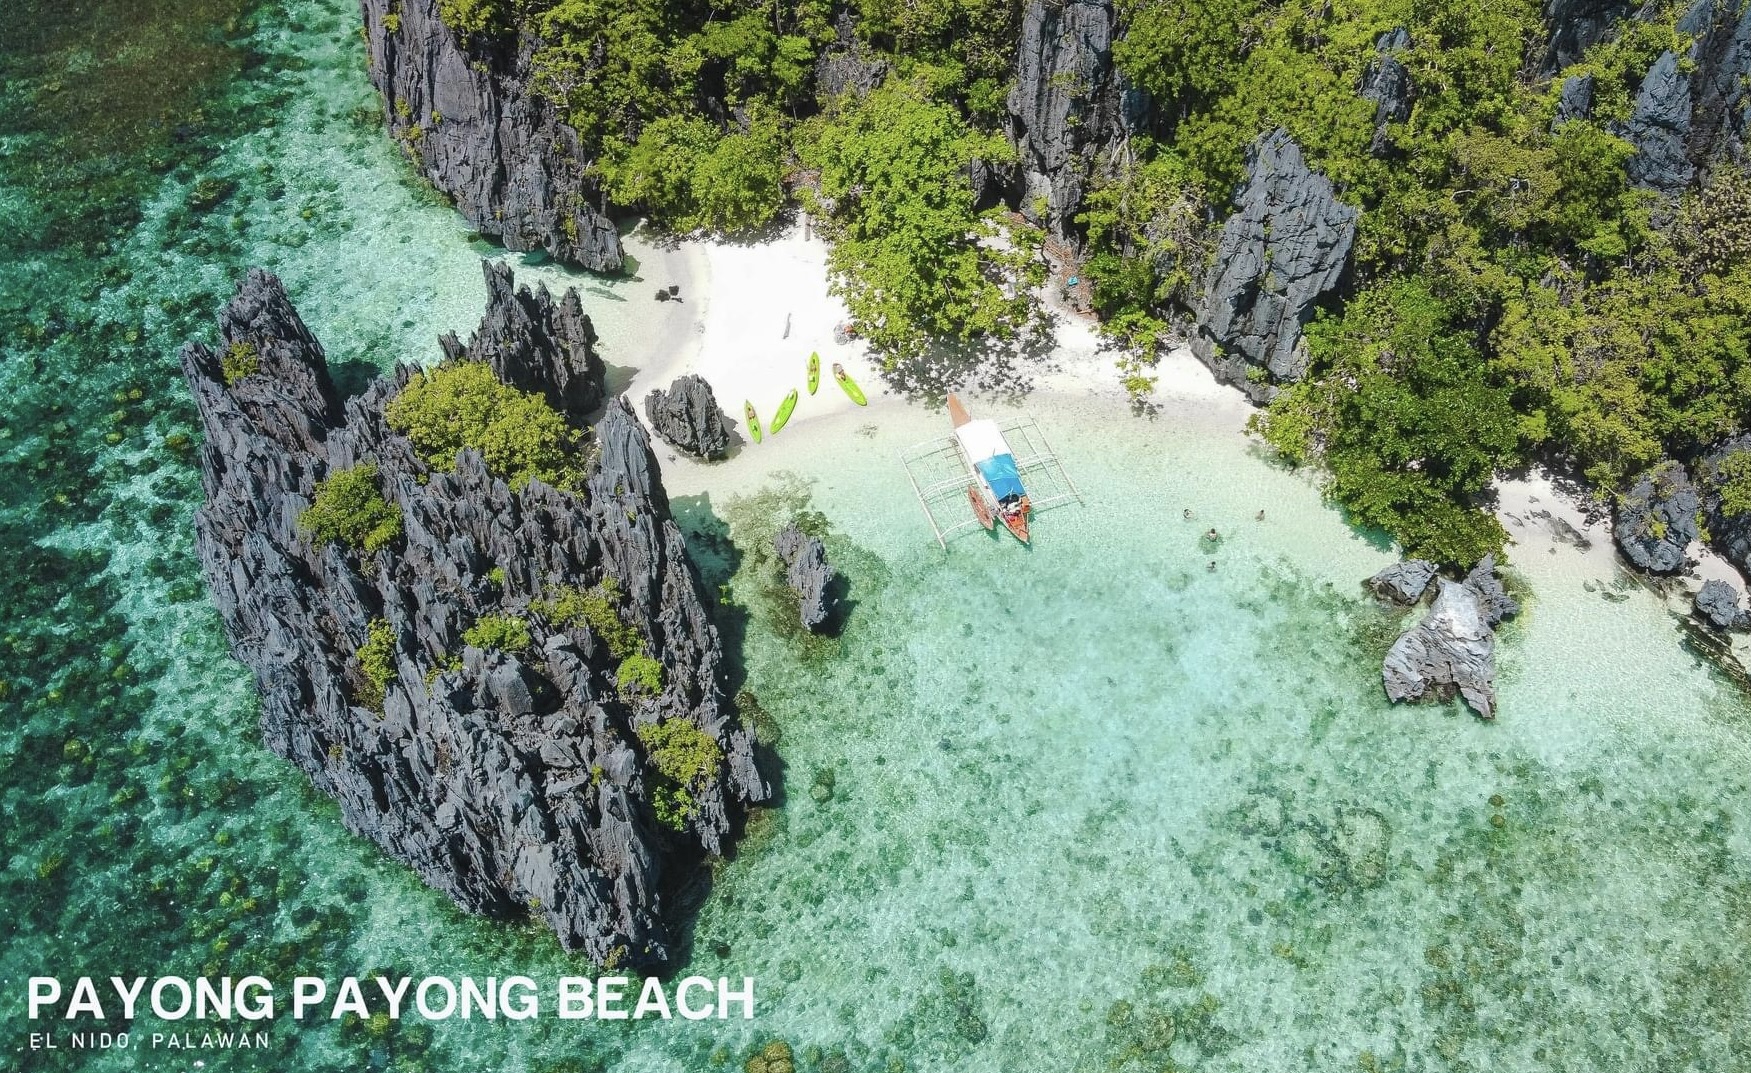 Payong-payong-beach-El-nido-Palawan-boat-tour-package